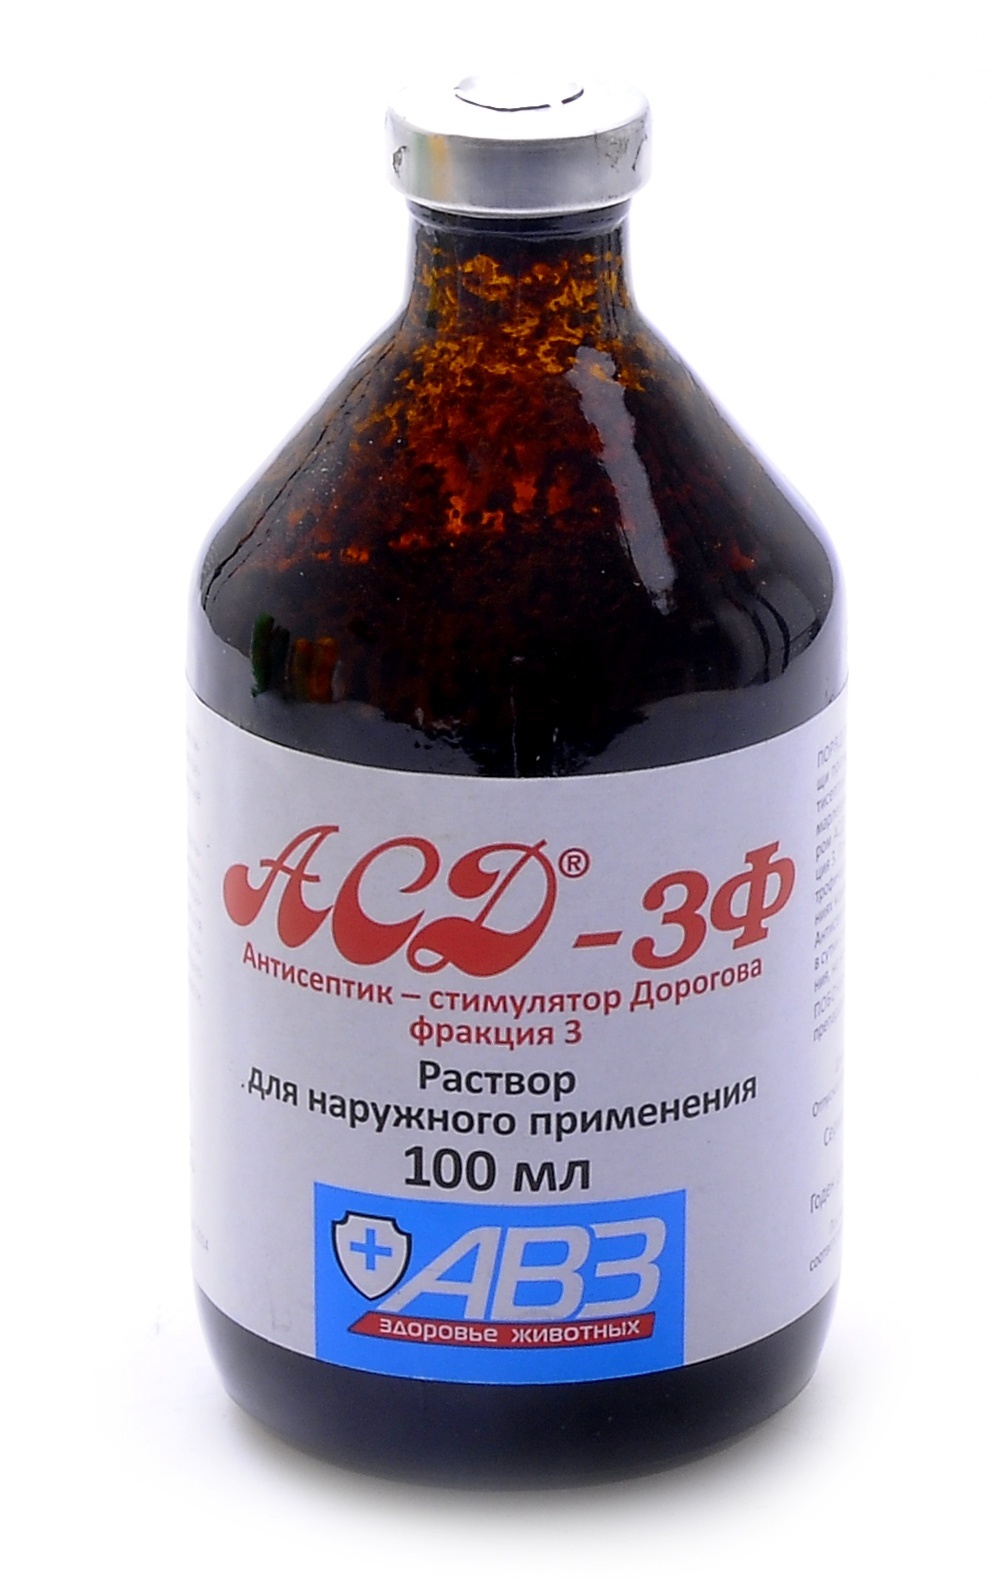 Агроветзащита Агроветзащита аСД-3 - антисептик-стимулятор Дорогова, фракция 3 (100 г)